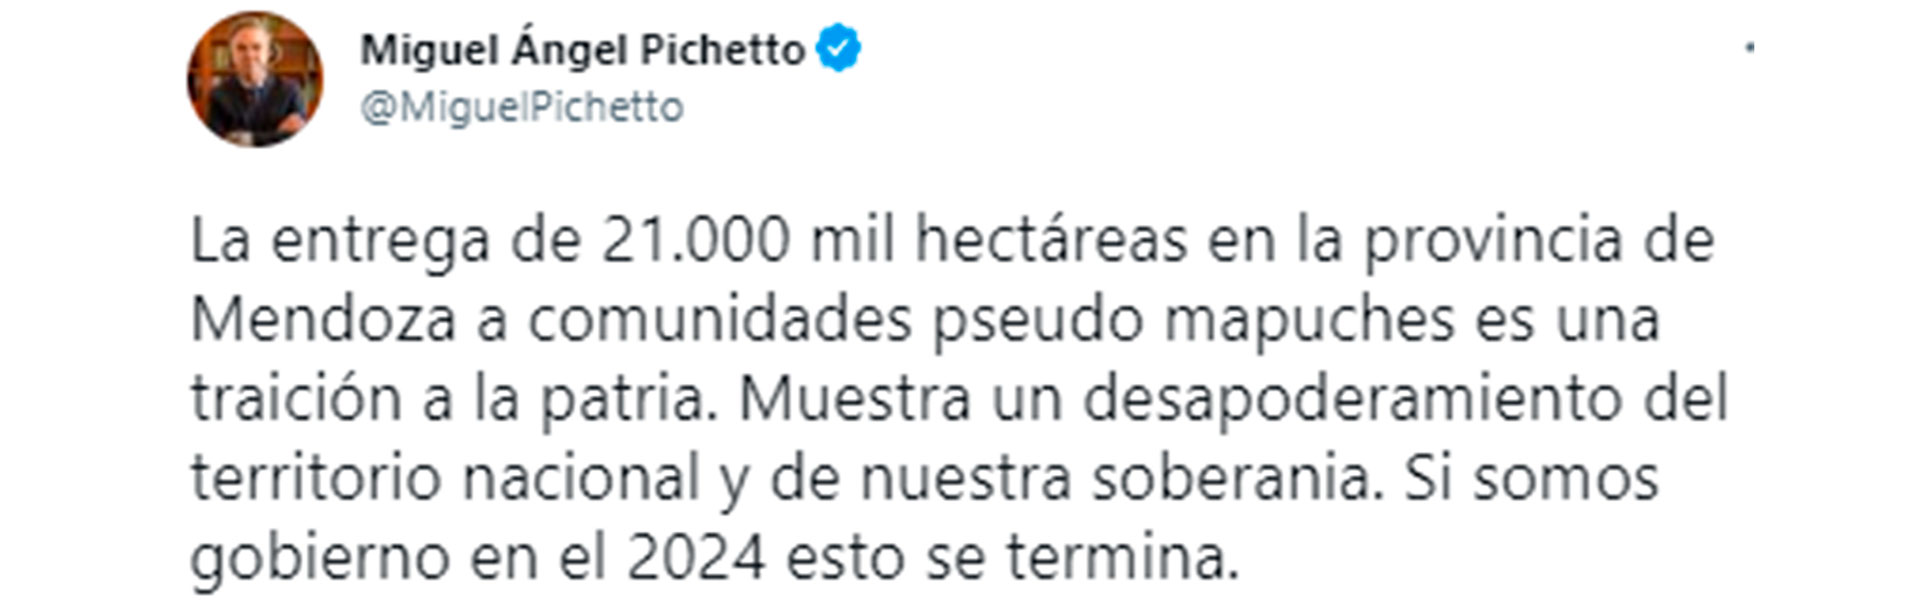 Miguel Ángel Pichetto se sumó a las críticas de la oposición contra el Gobierno nacional por la entrega de tierras a comunidades mapuches de Mendoza. 